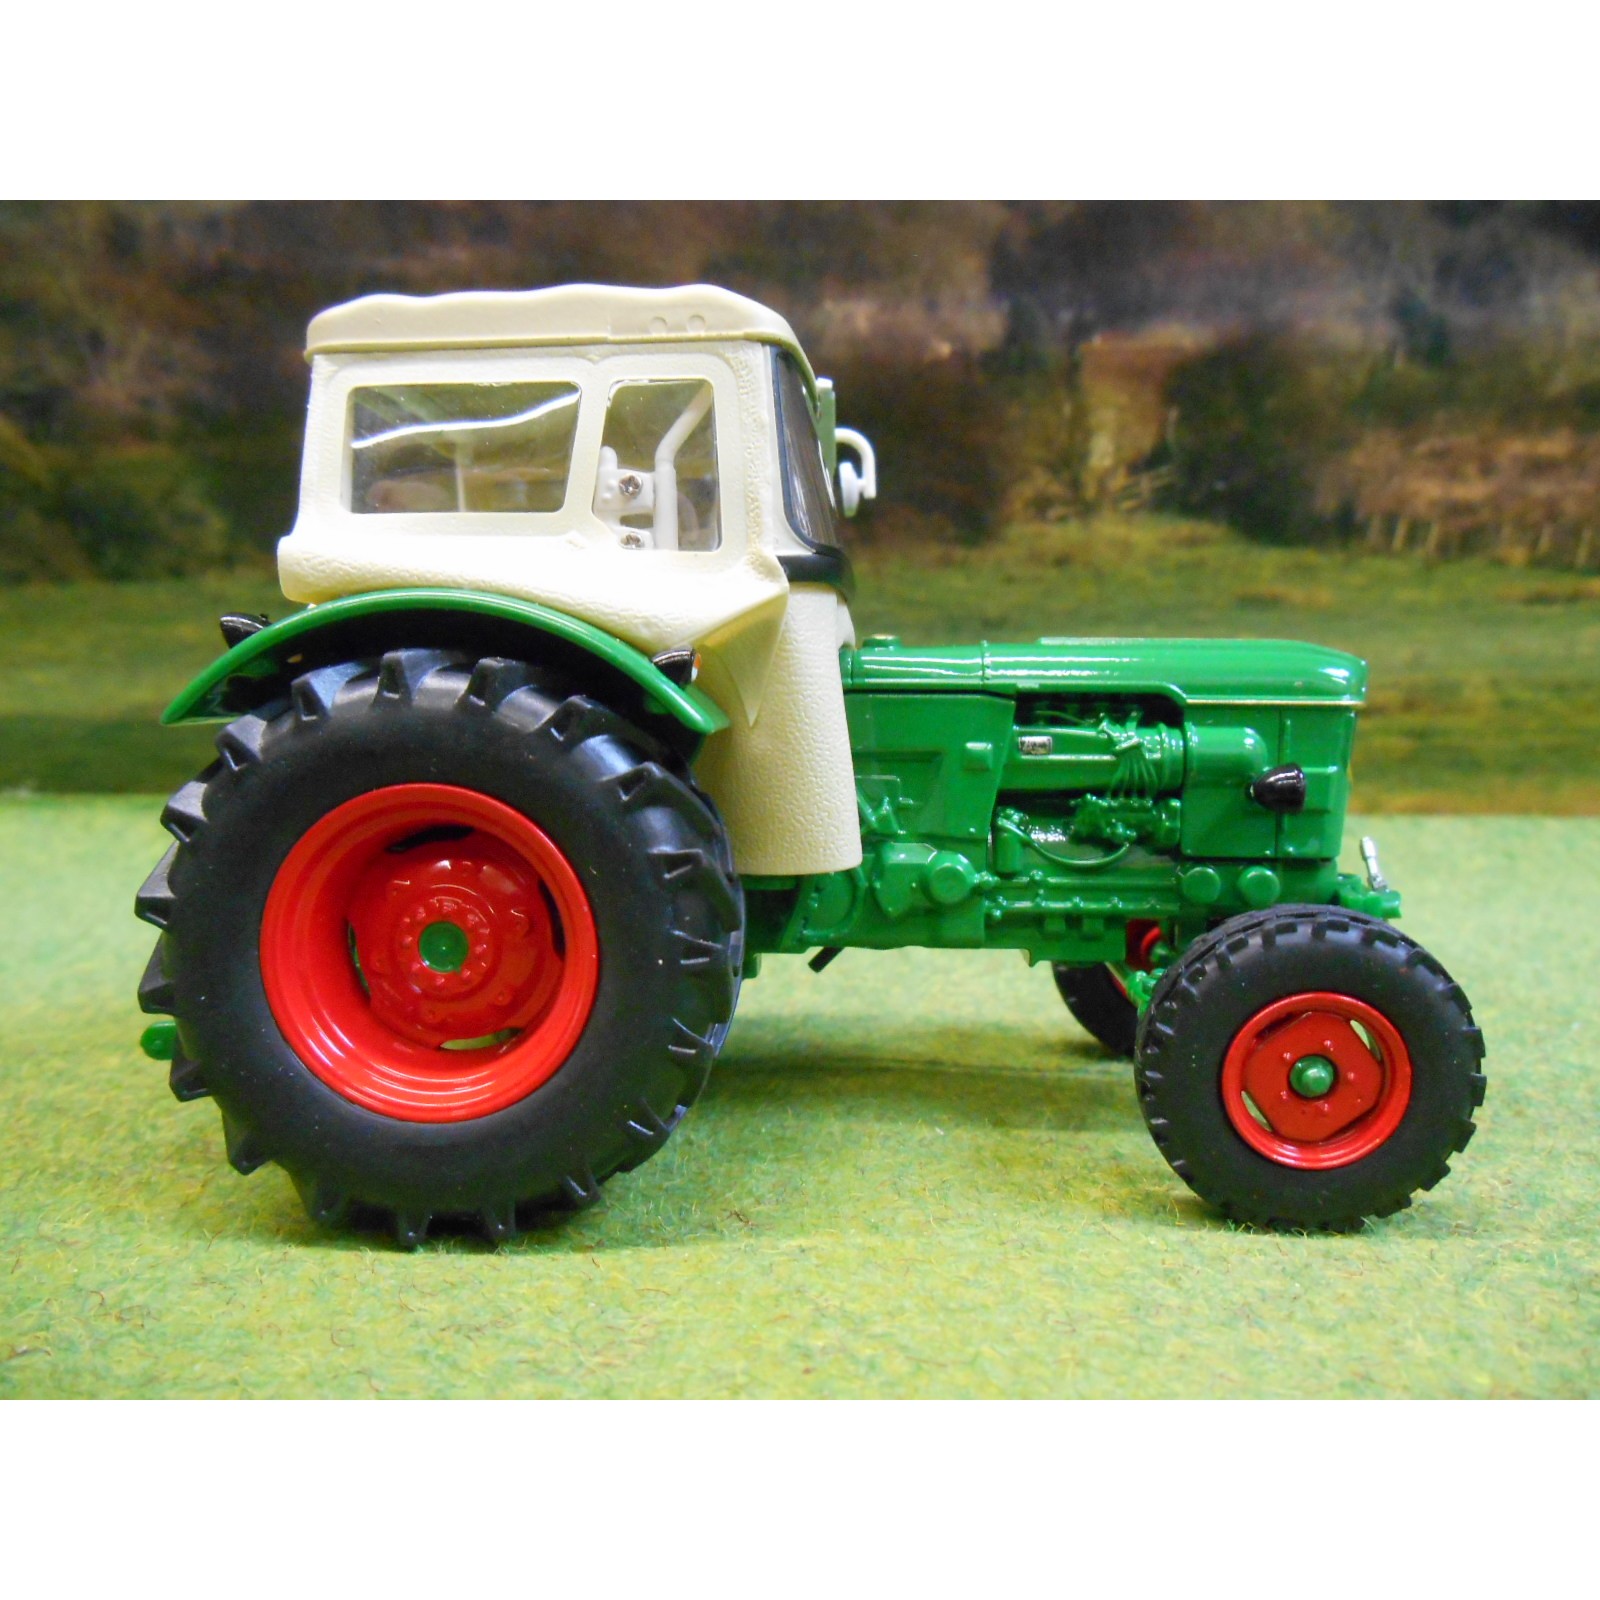 Deutz d6005 2wd with Cabin tractor 1:32 Model 5252 universal hobbies 